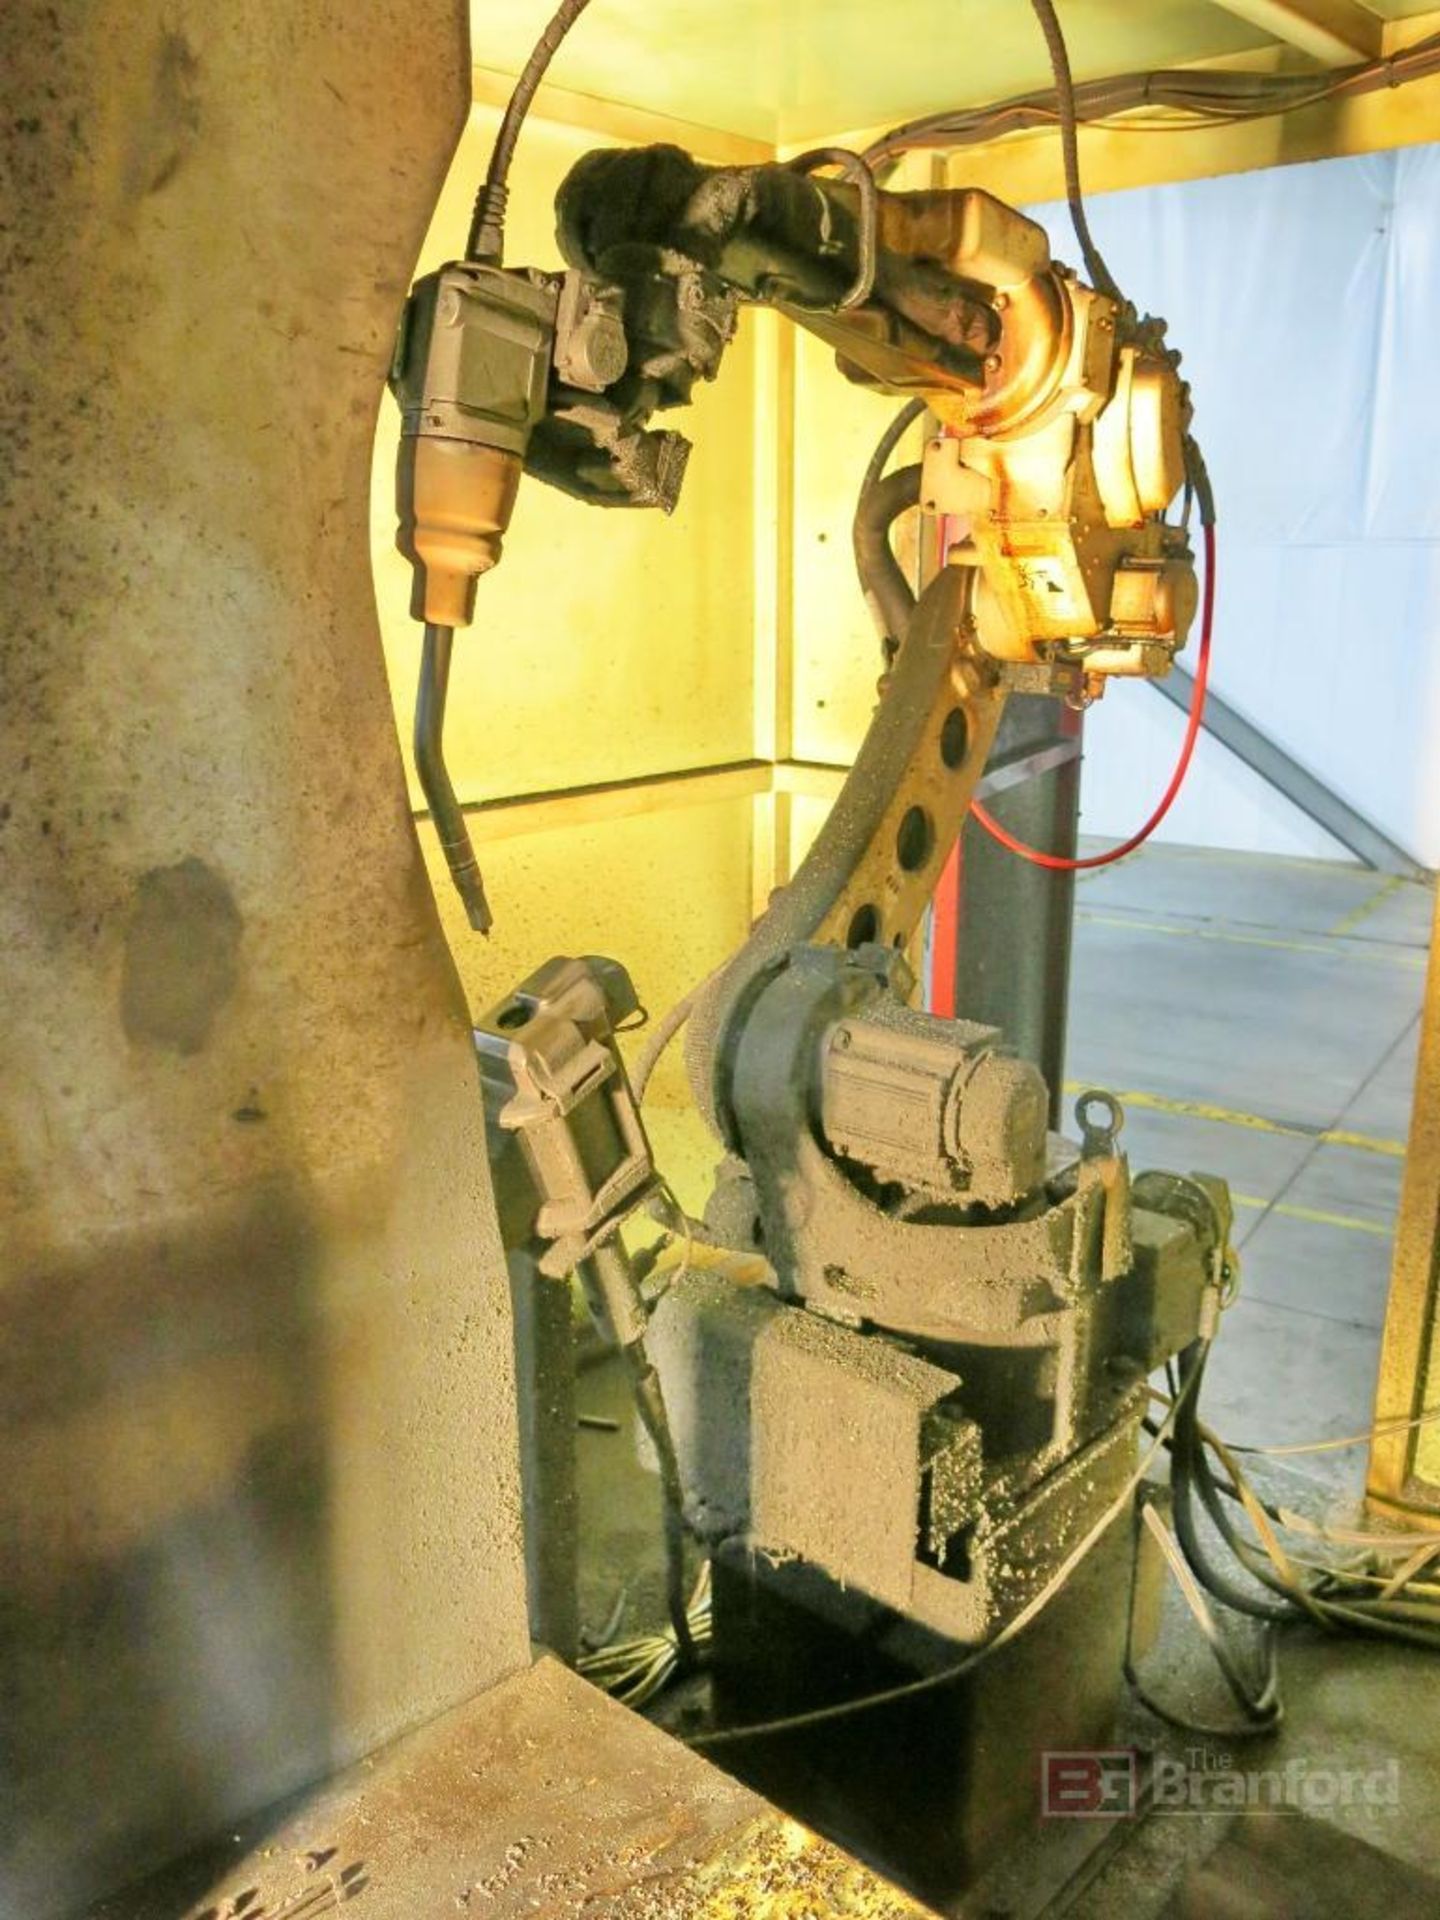 Panasonic Model TM-1400WGIII Robotic Welder - Image 3 of 8